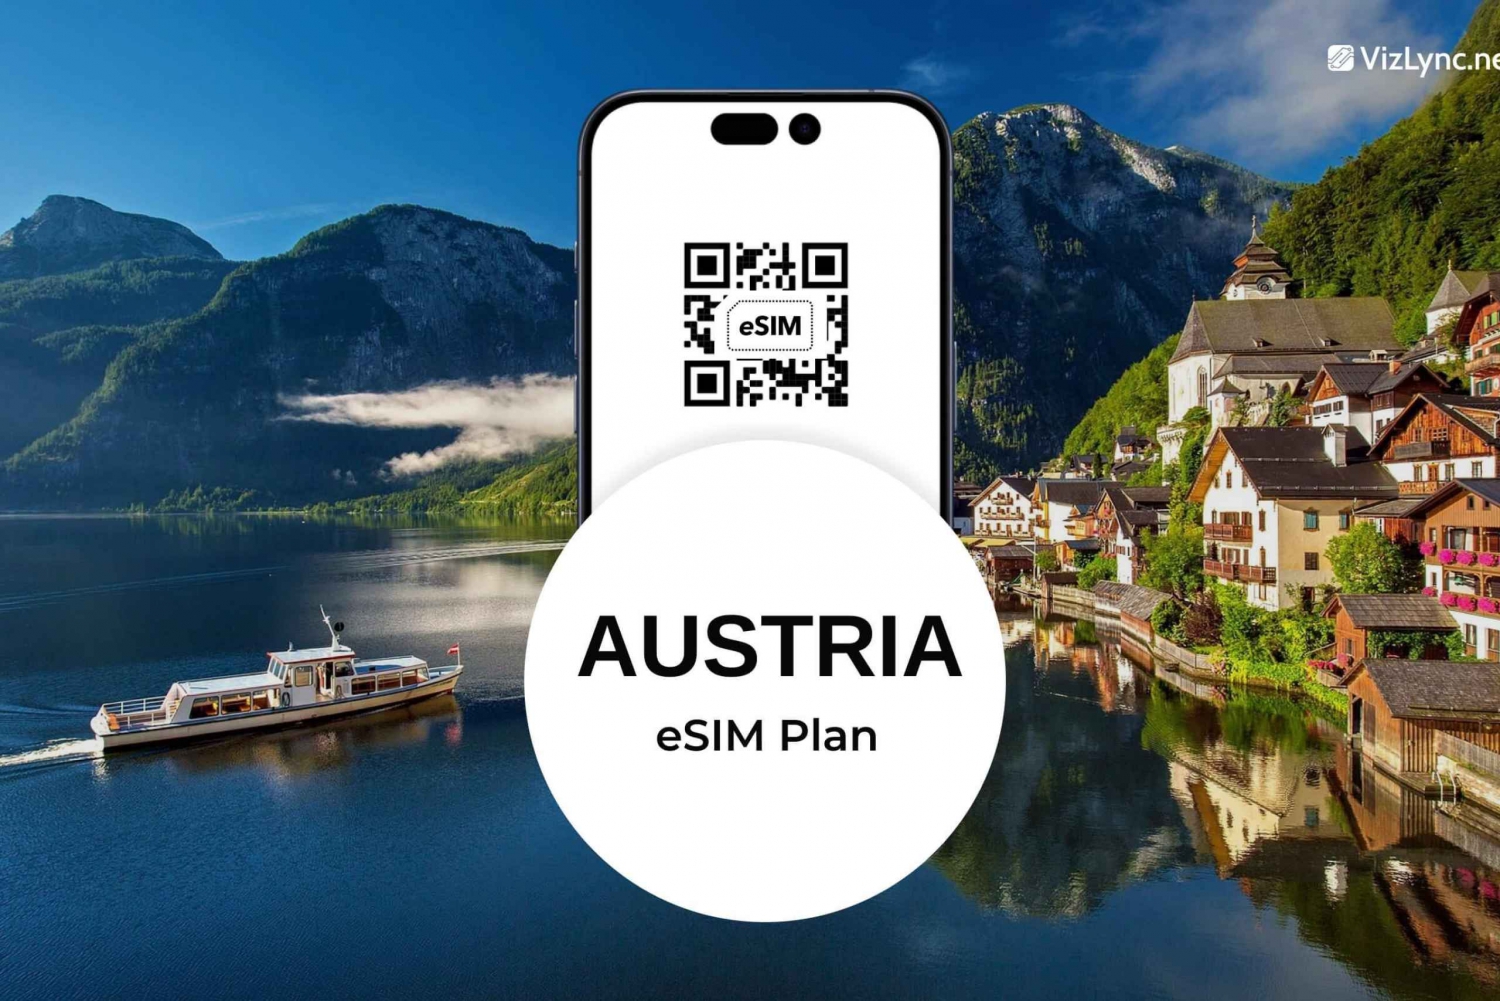 Plano eSIM para viagens na Áustria com dados móveis super rápidos